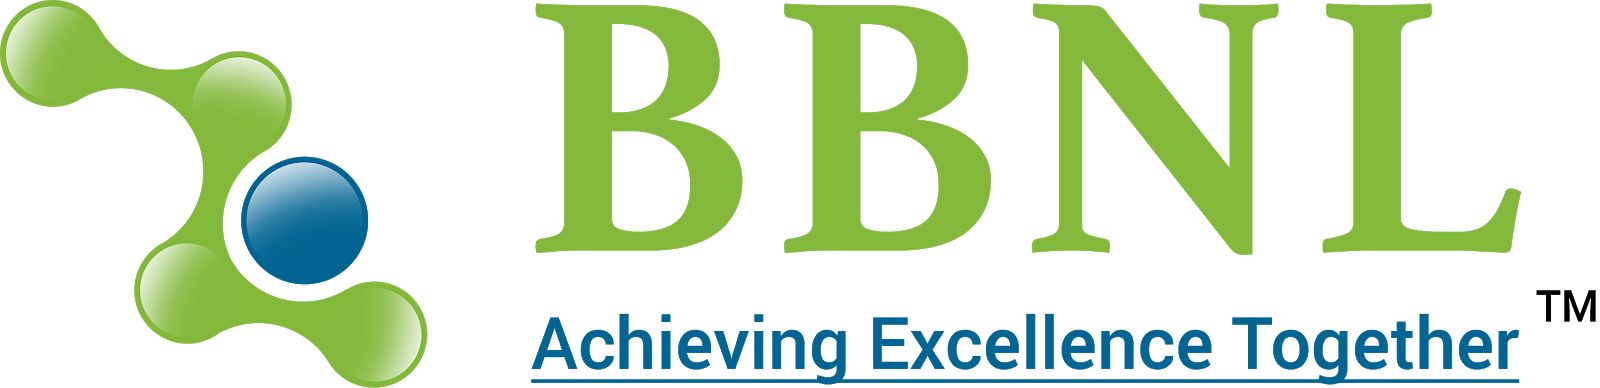 BBNL Logo